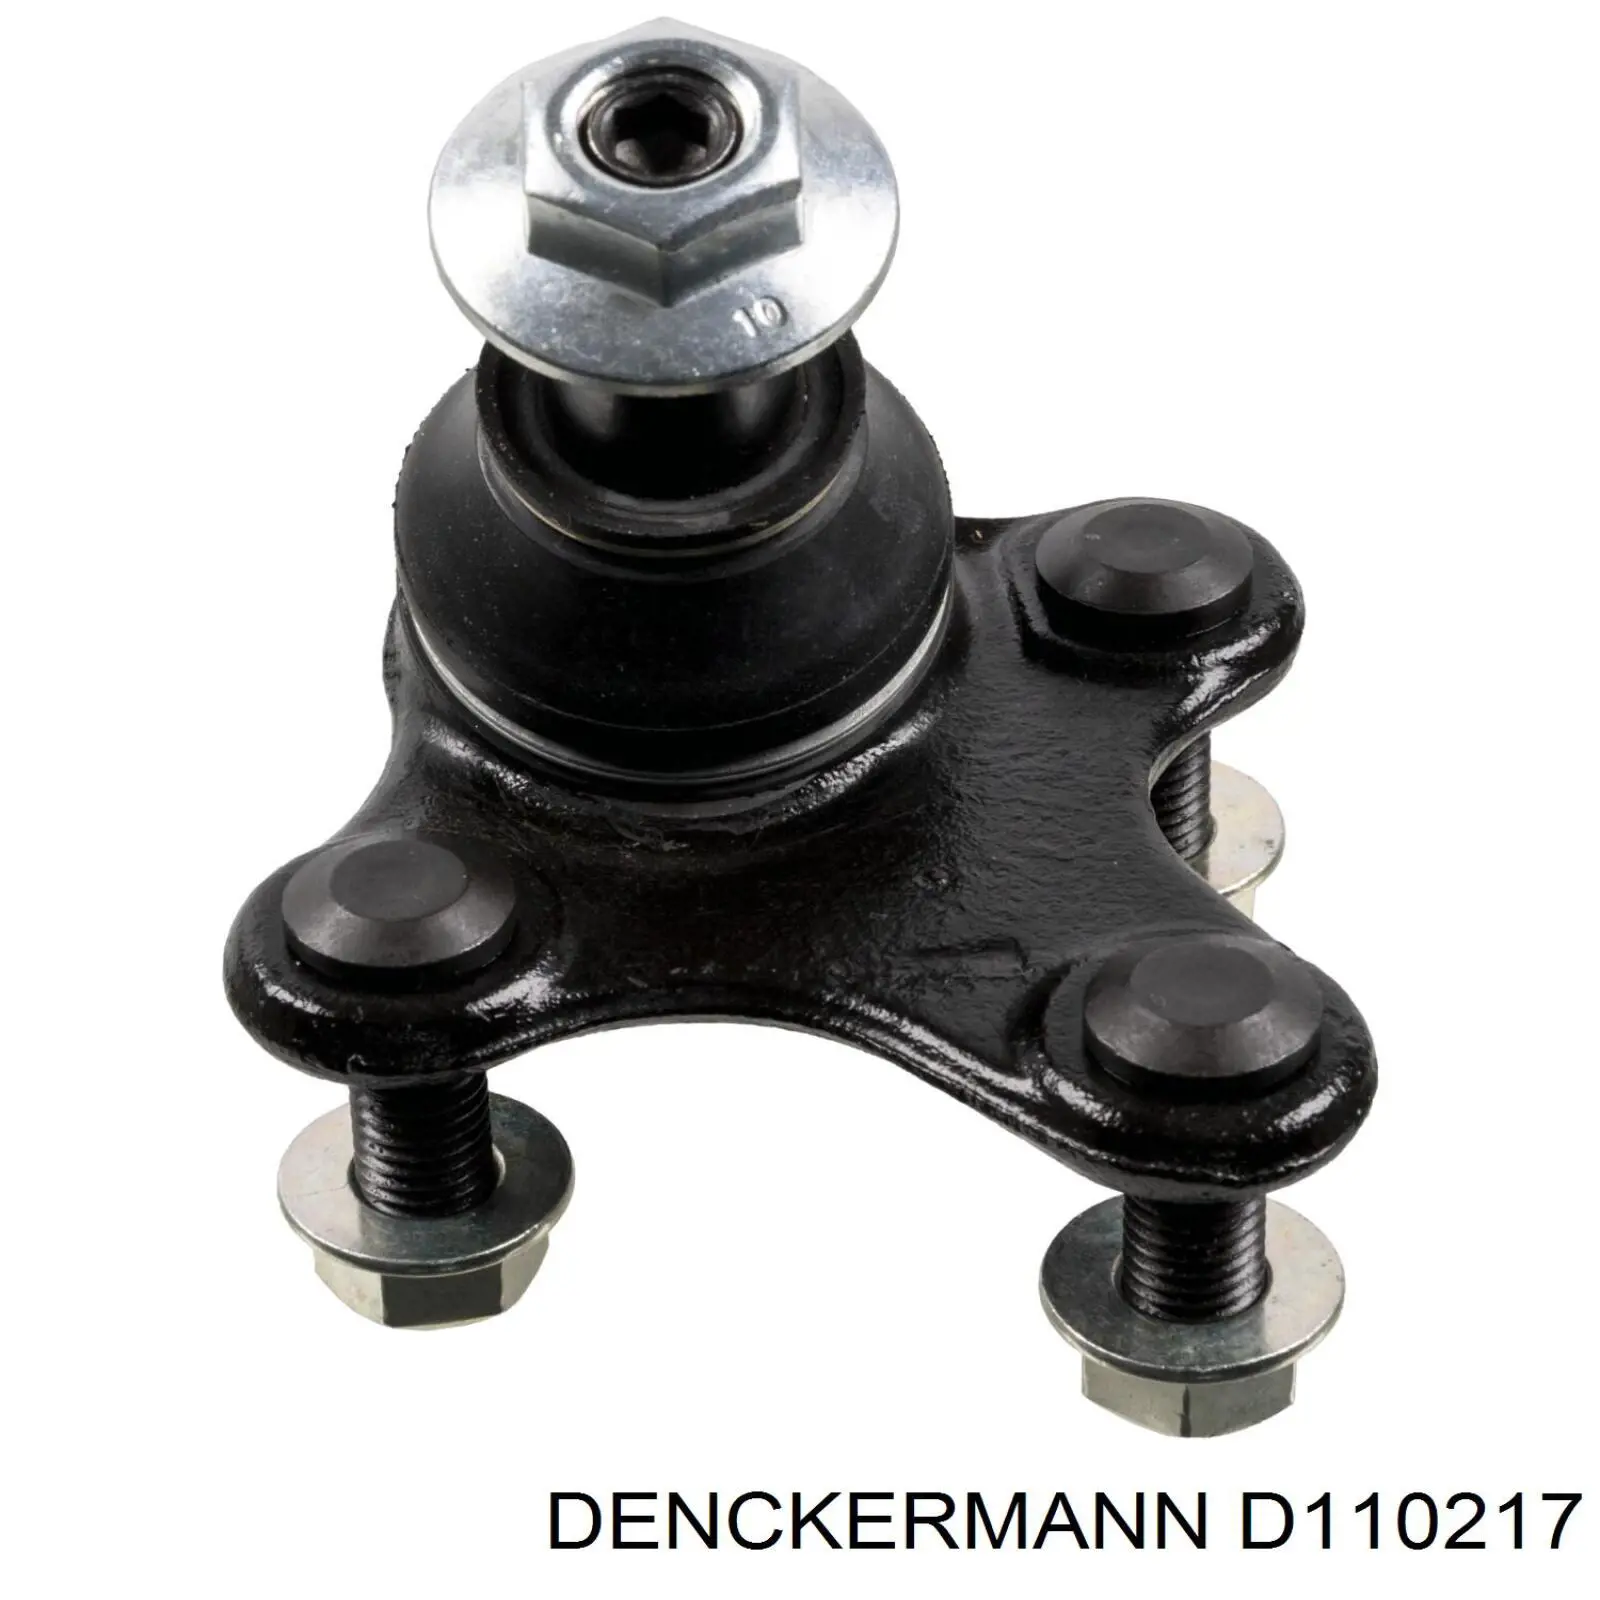 D110217 Denckermann шаровая опора нижняя левая